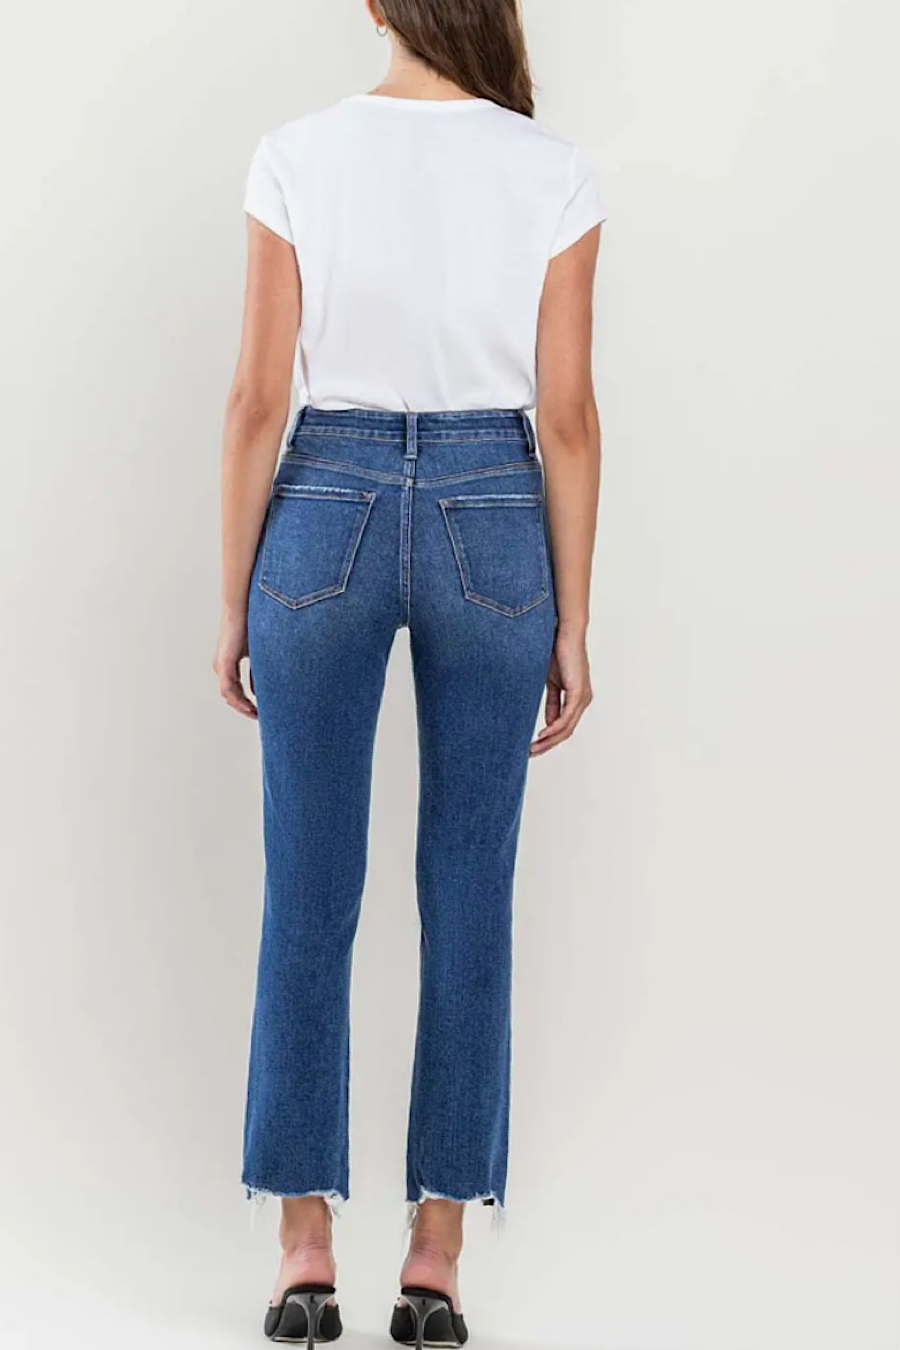 Razor Sharp Slim Straight Jeans